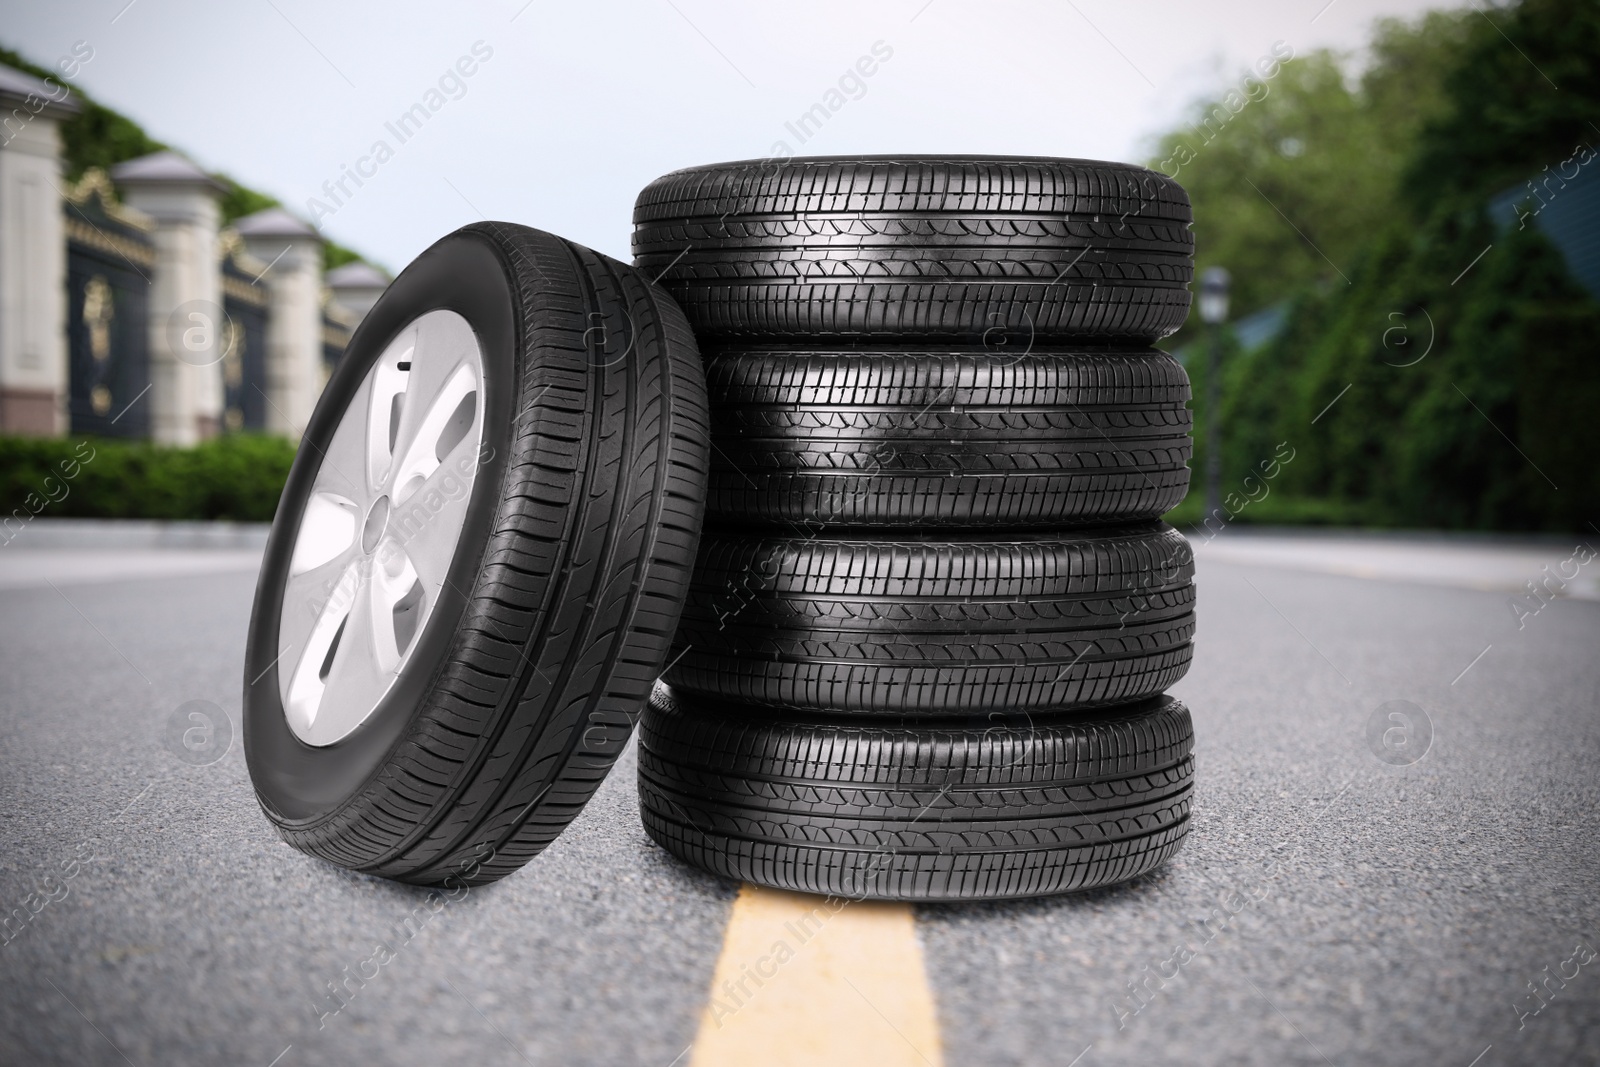 Image of Black car tires on asphalt road outdoors